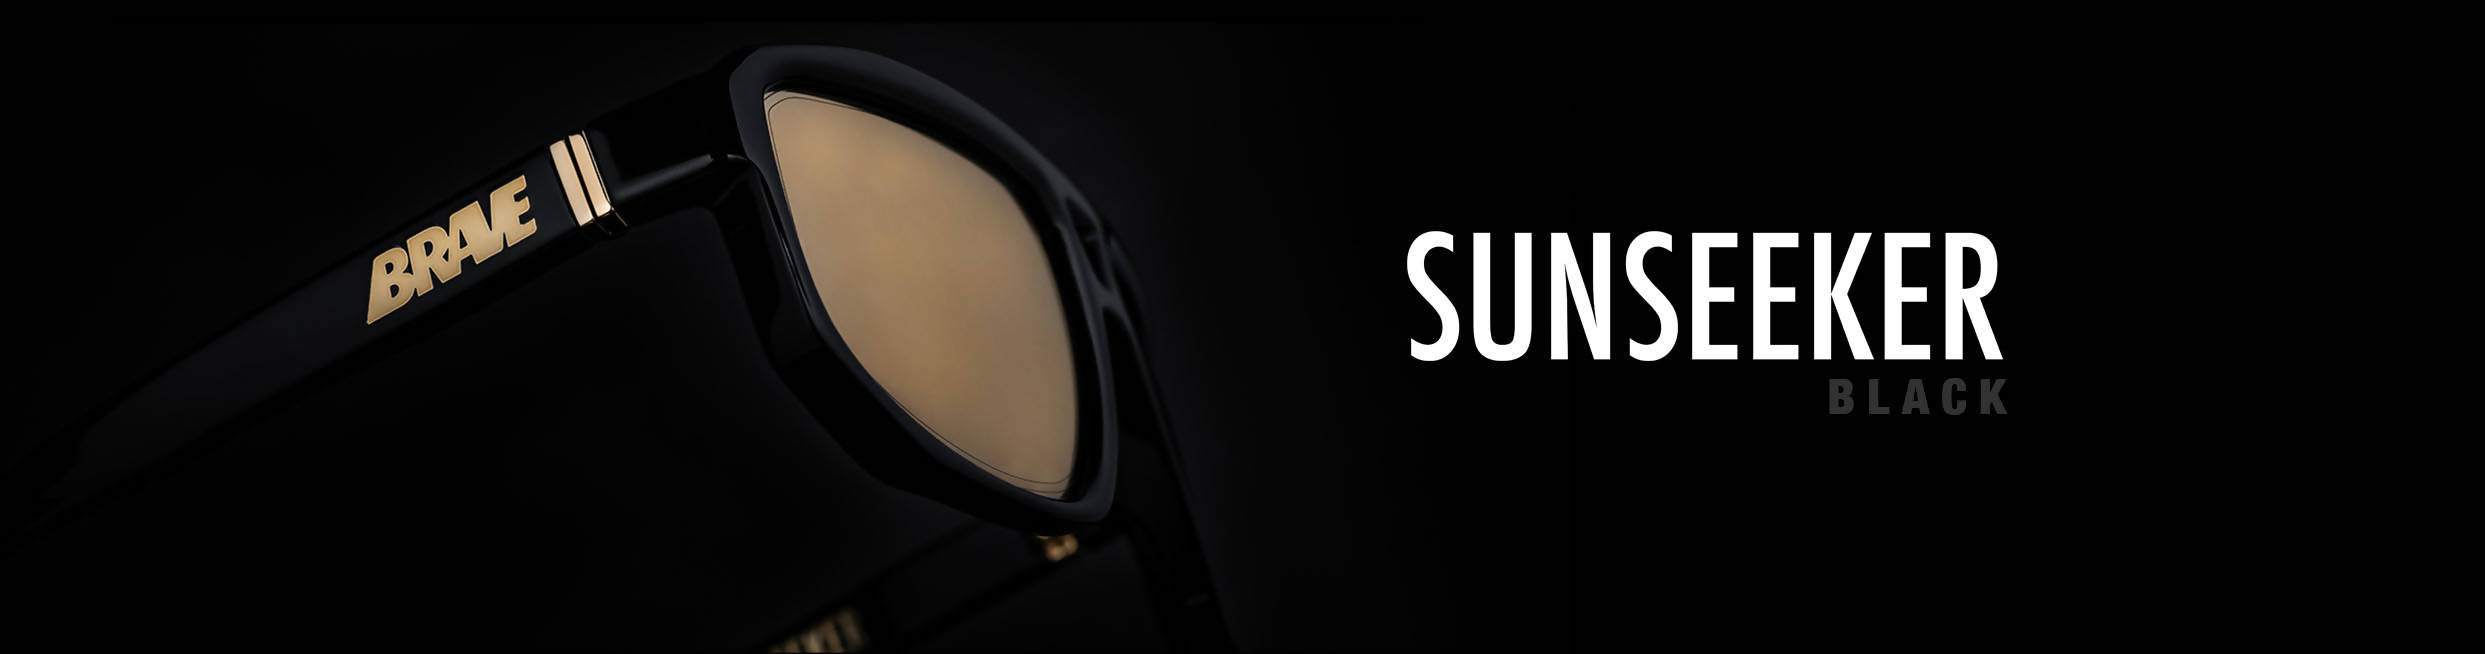 Lunette de soleil - sunseeker noir